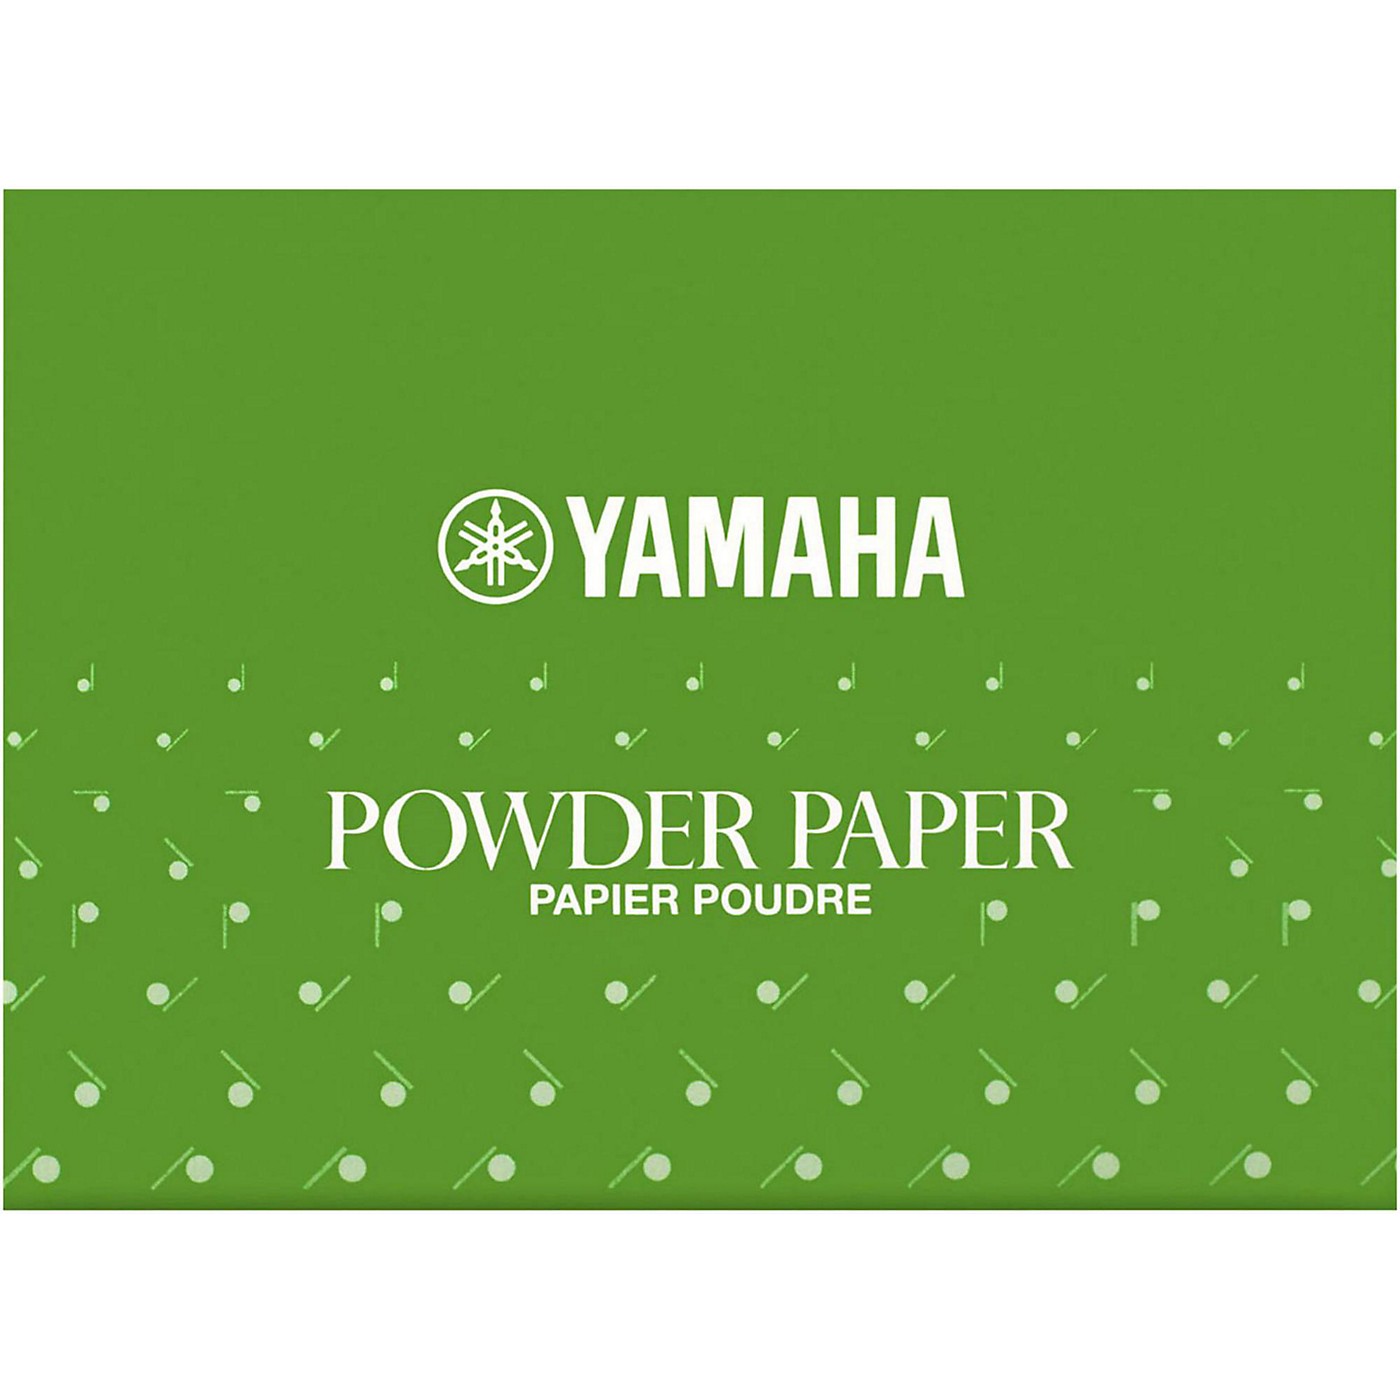 Yamaha Powder Paper thumbnail